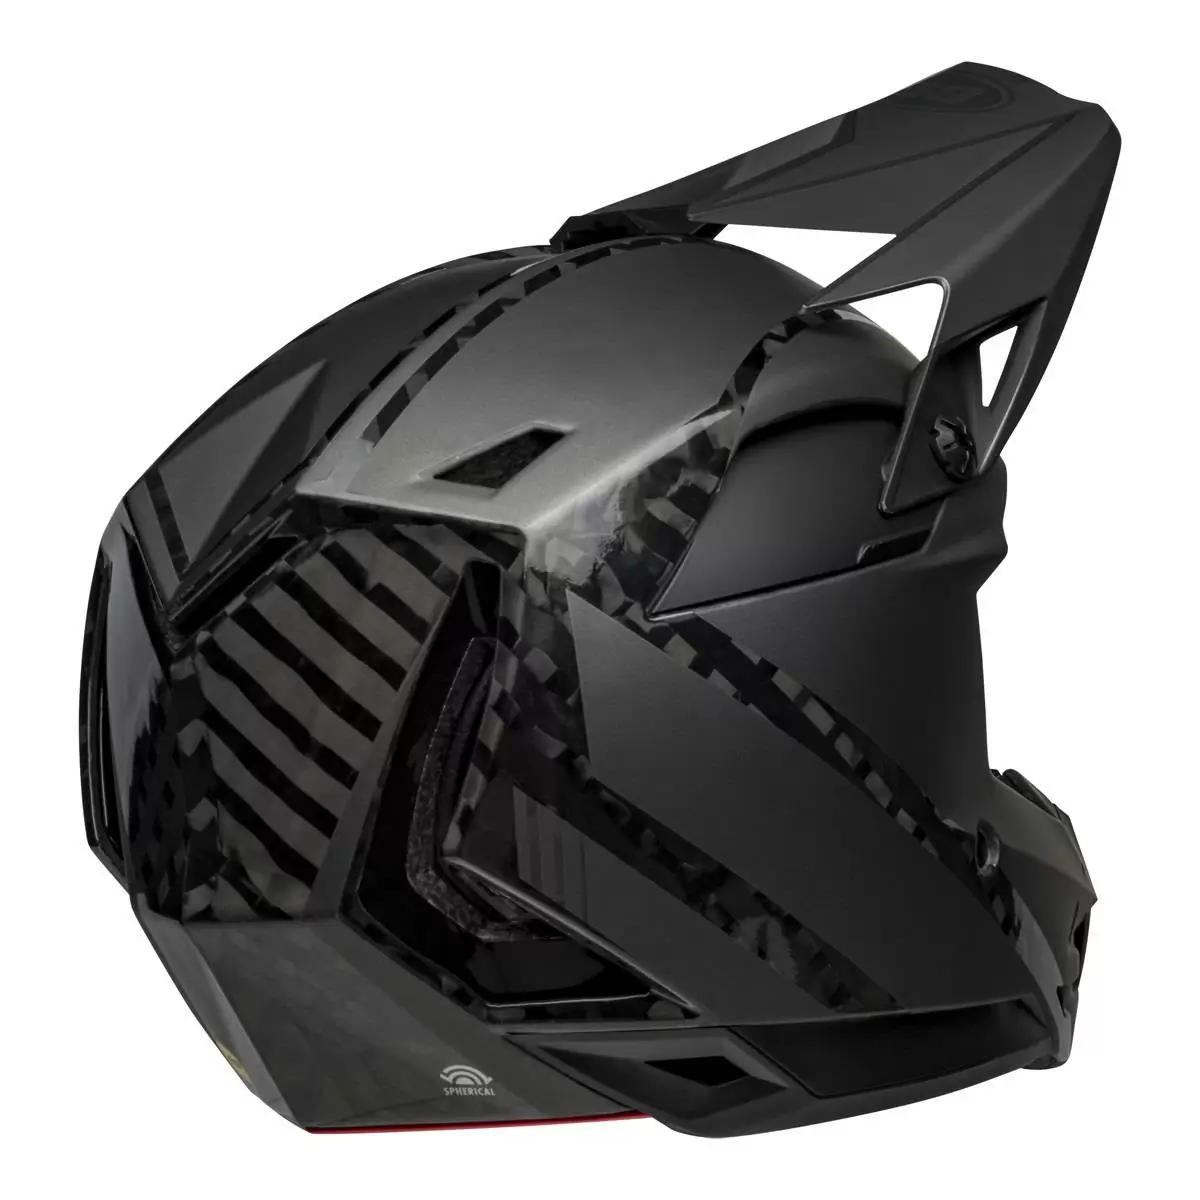 Full-10 Spherical Arise Matte / Gloss Black Carbon Full Face Helmet Size M (55-57cm) #4